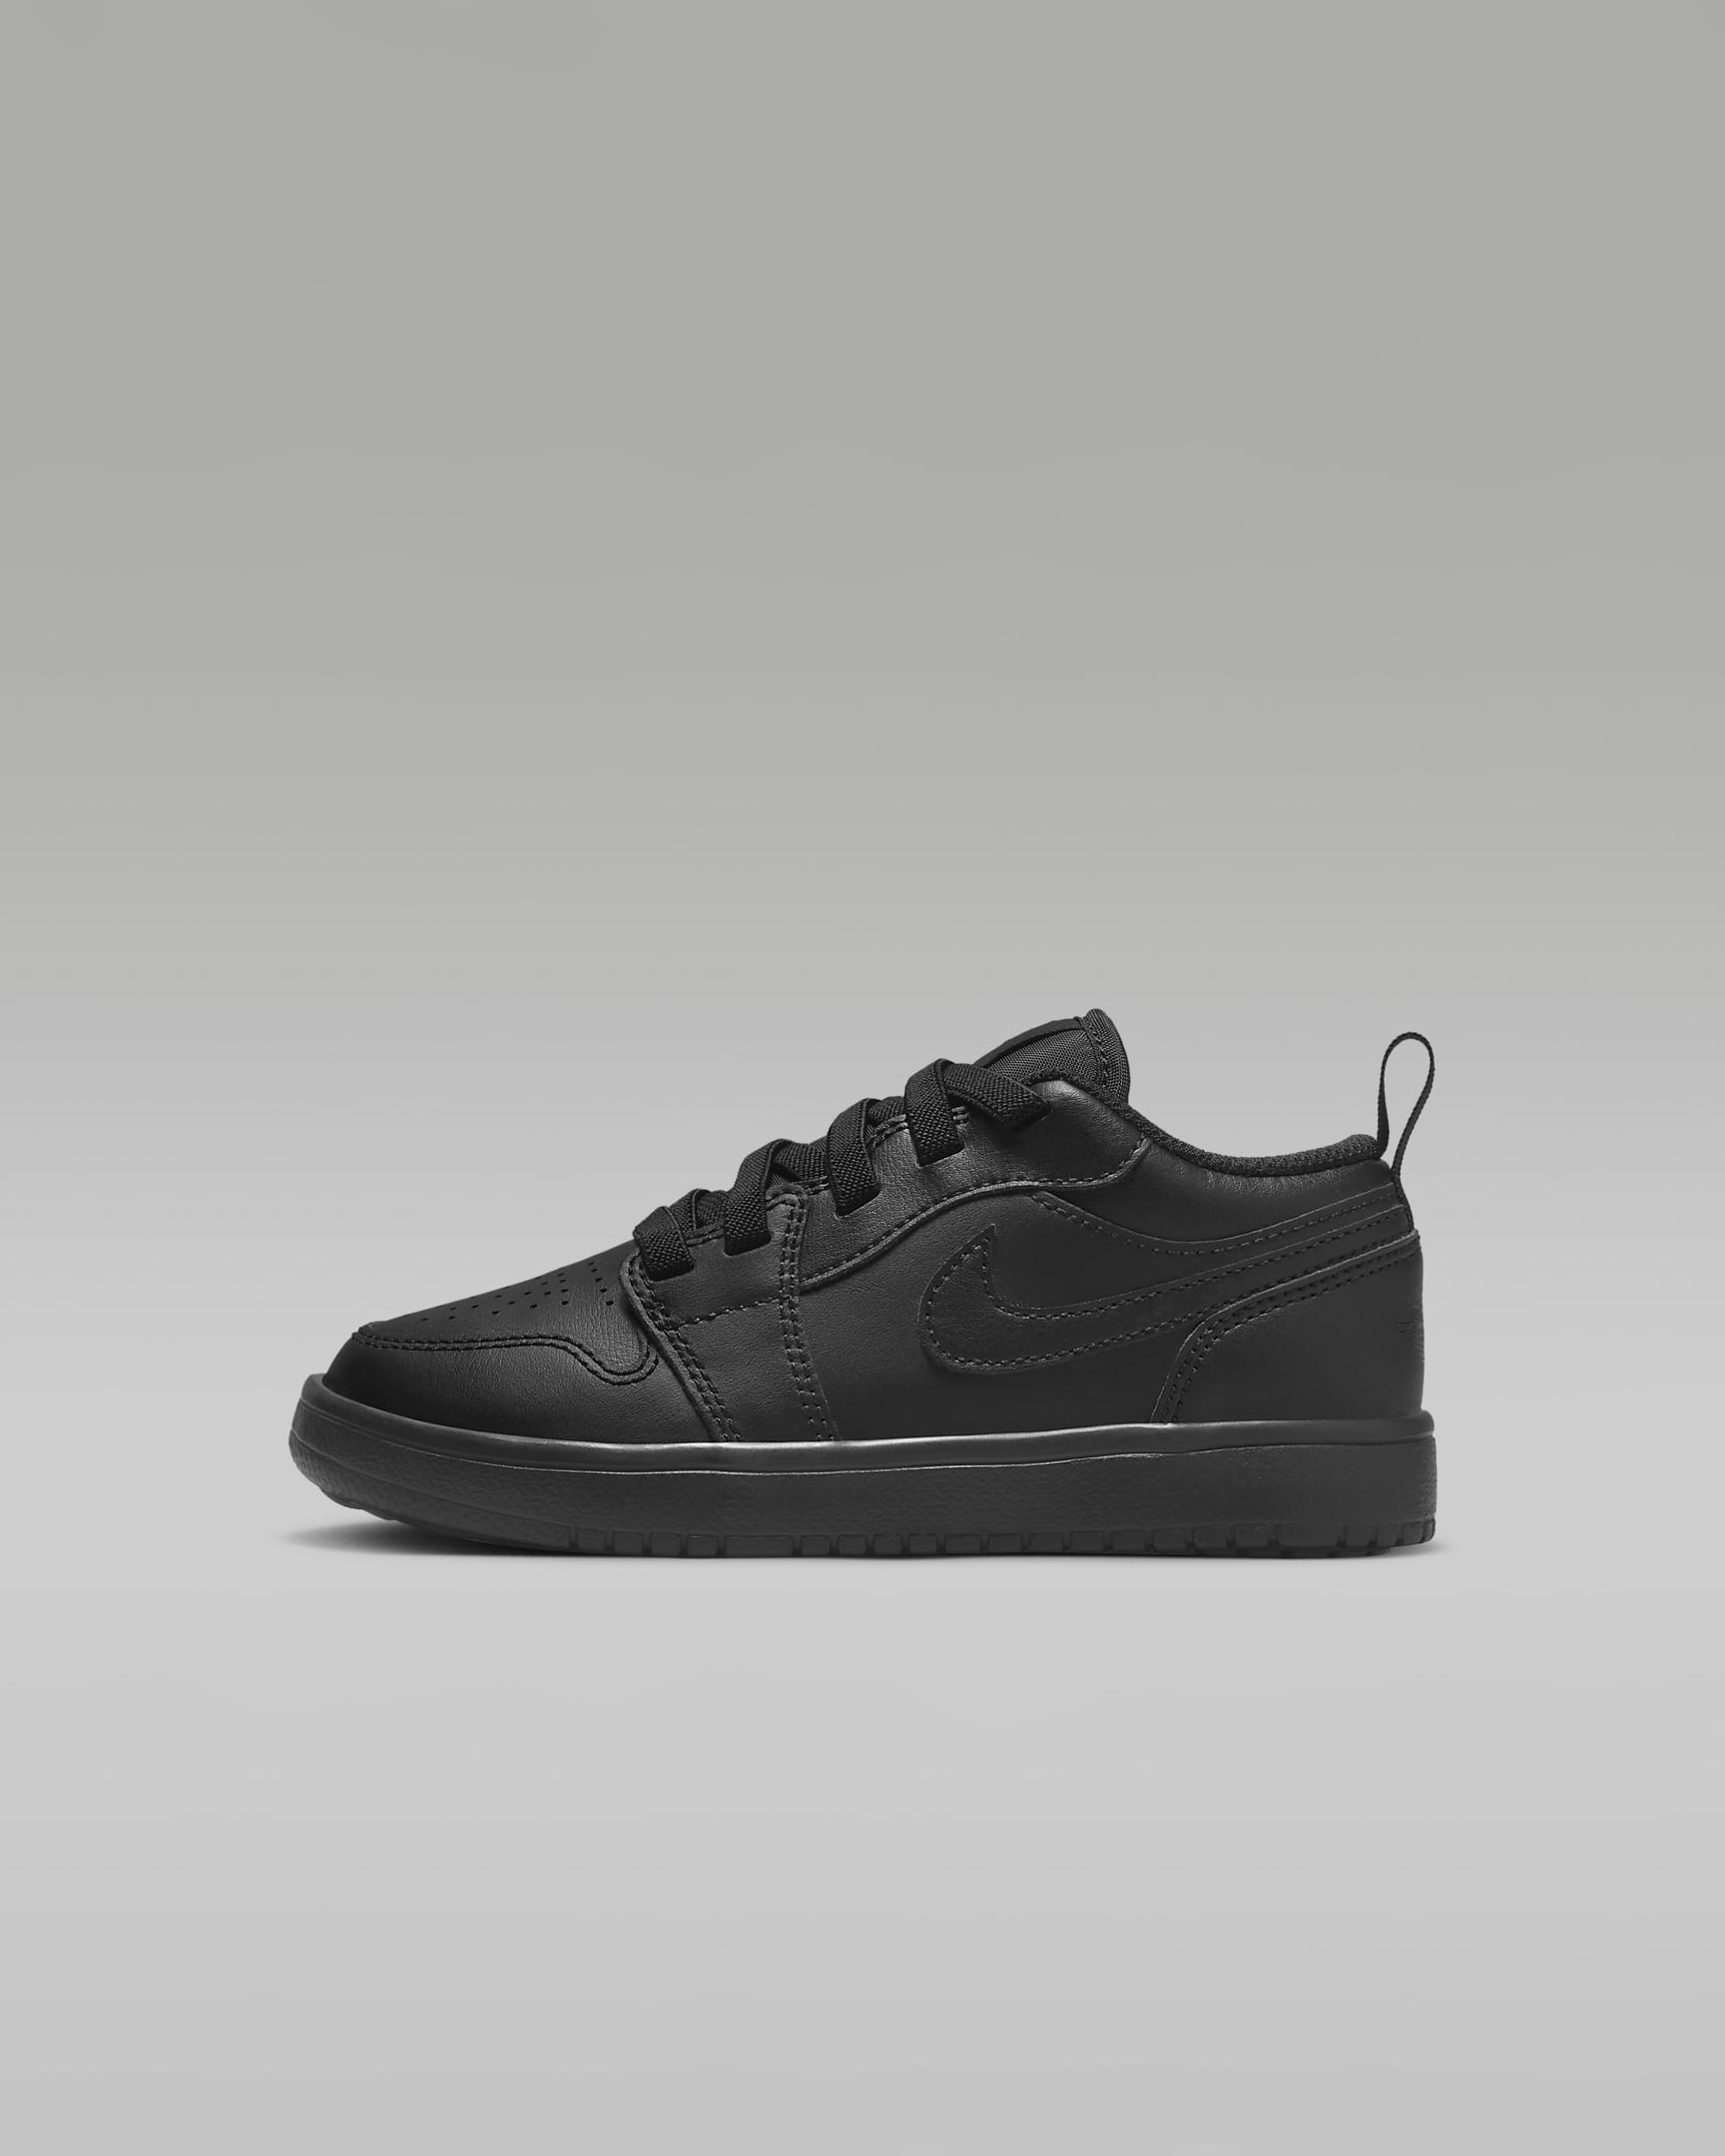 Jordan 1 Low Alt Younger Kids' Shoes - Black/Black/Black